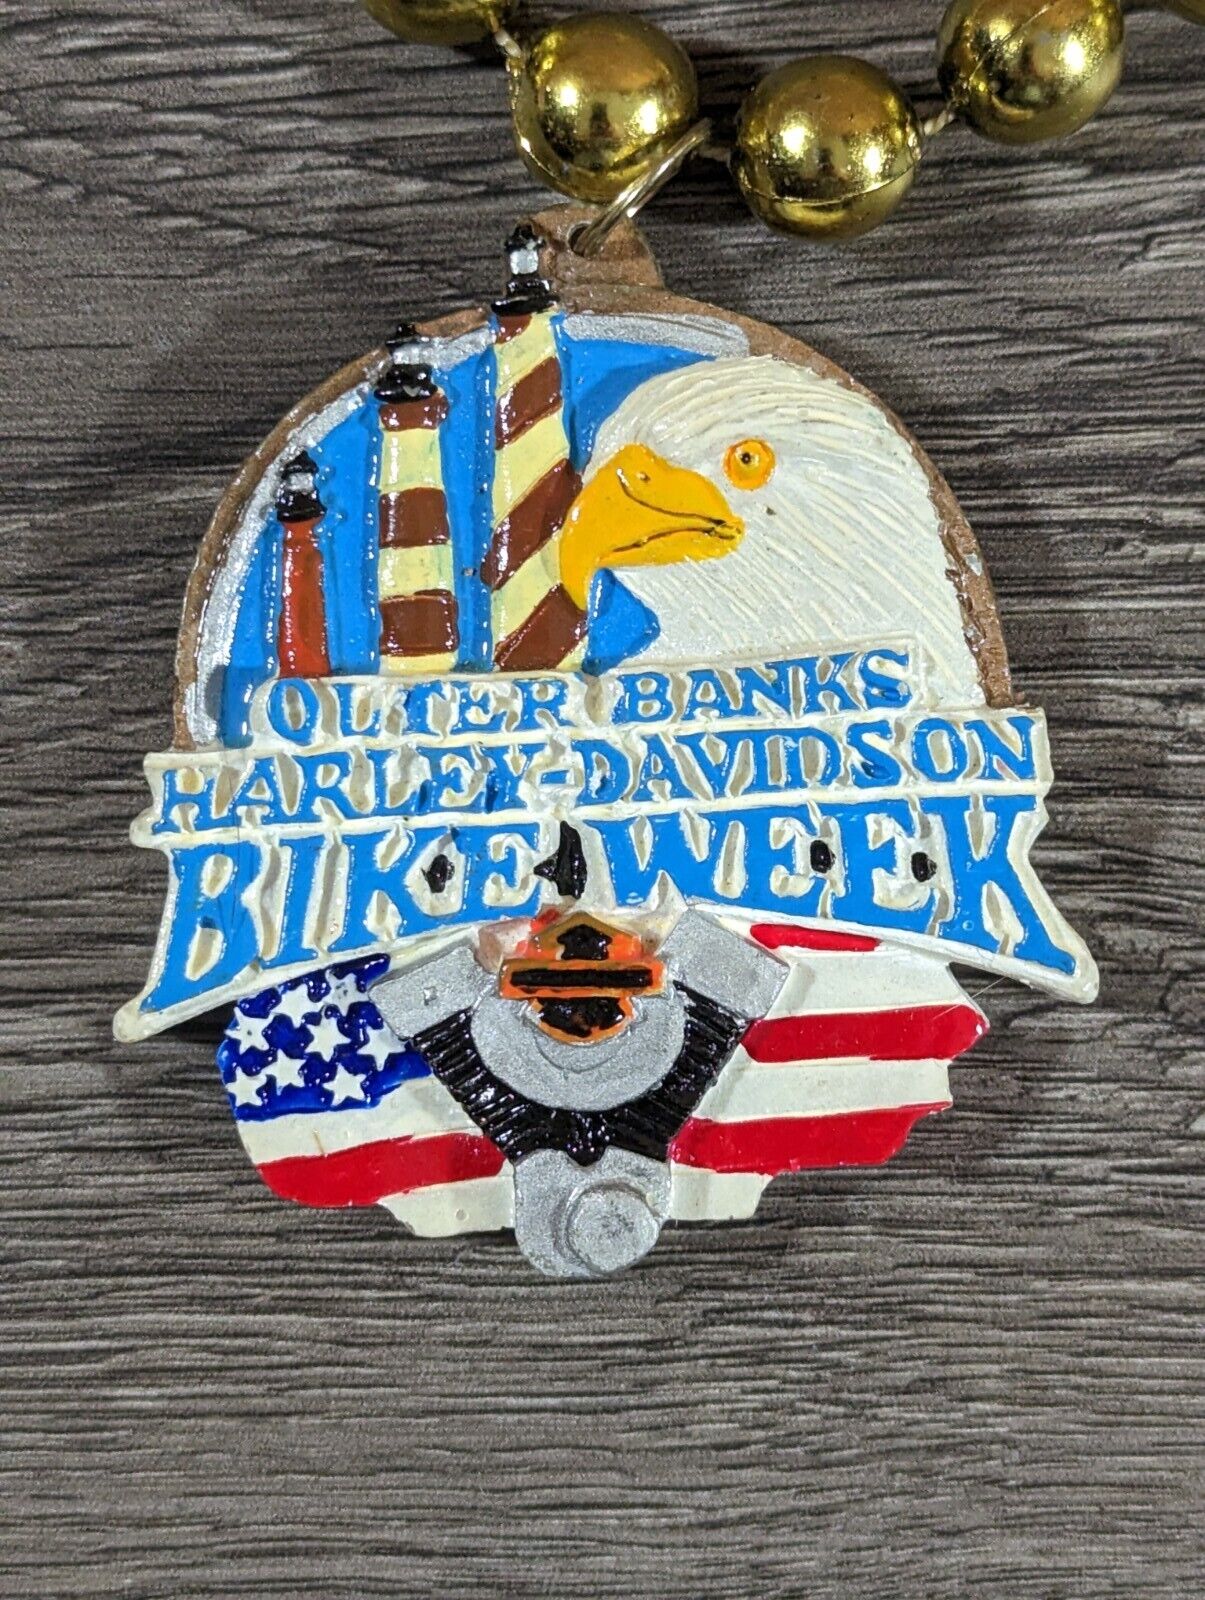 Vintage Harley Davidson Outer Banks Bike Week Beaded Necklace Pendant